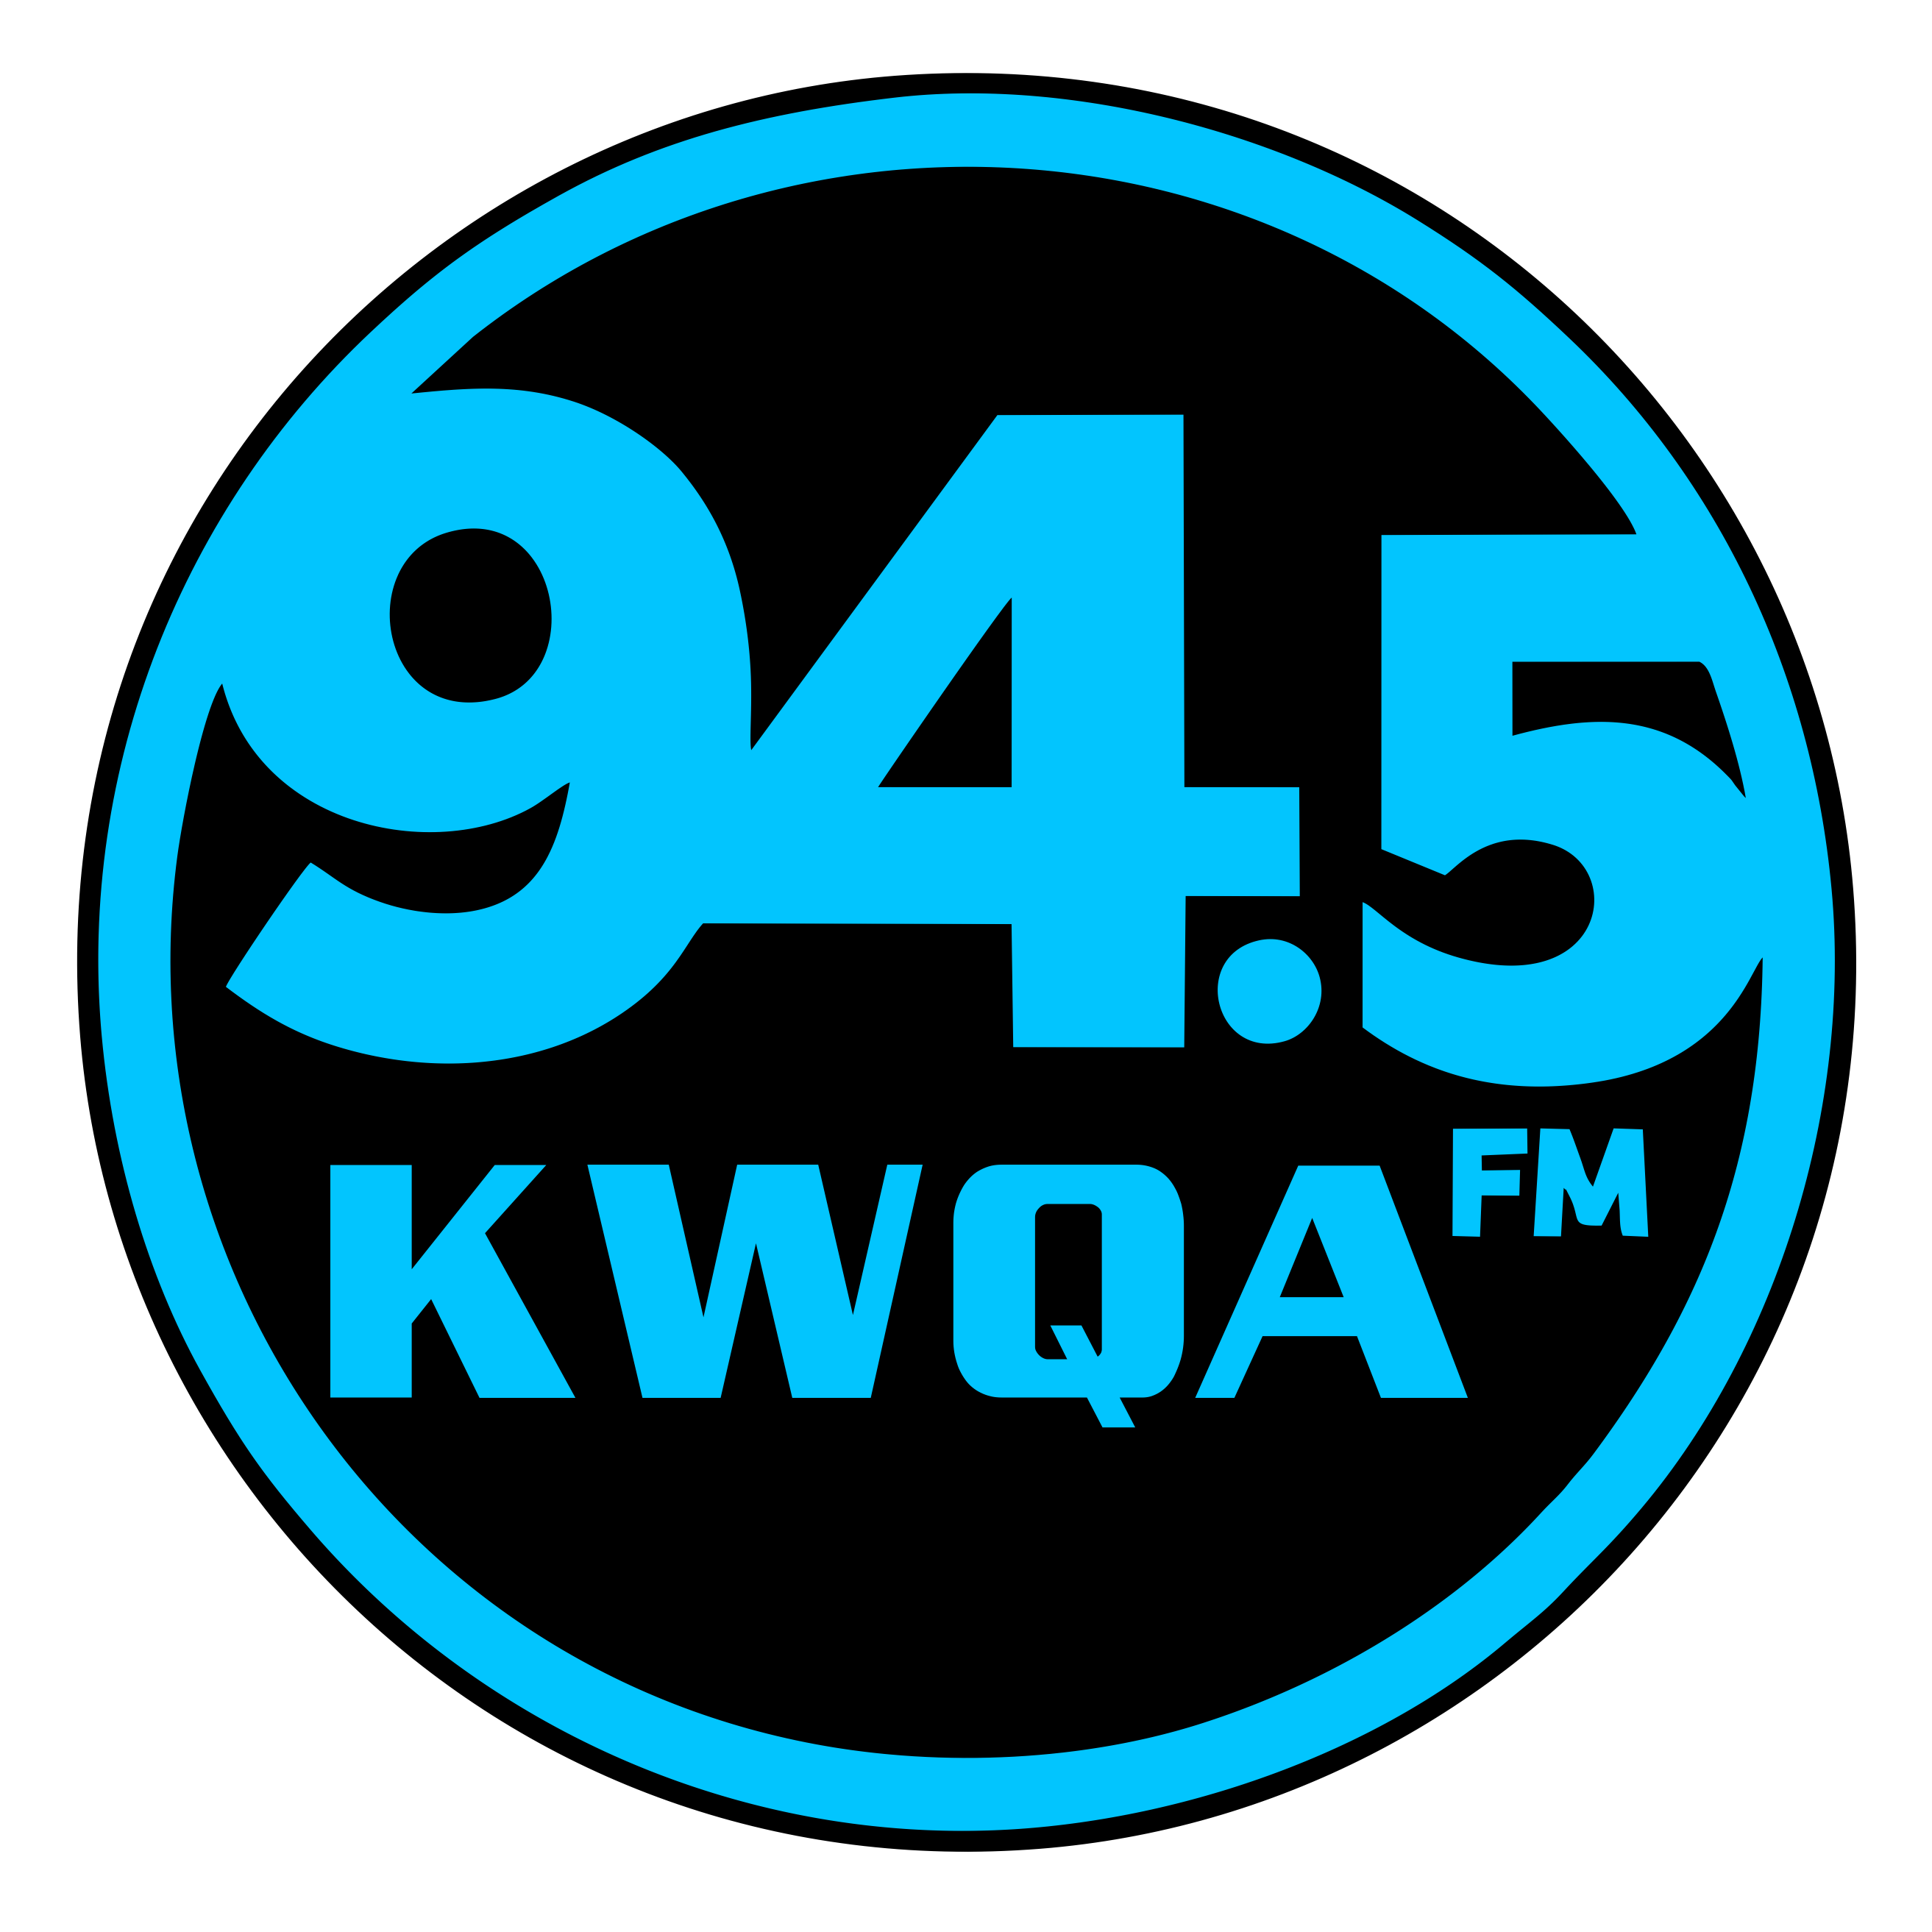 KWQA 94.5 FM